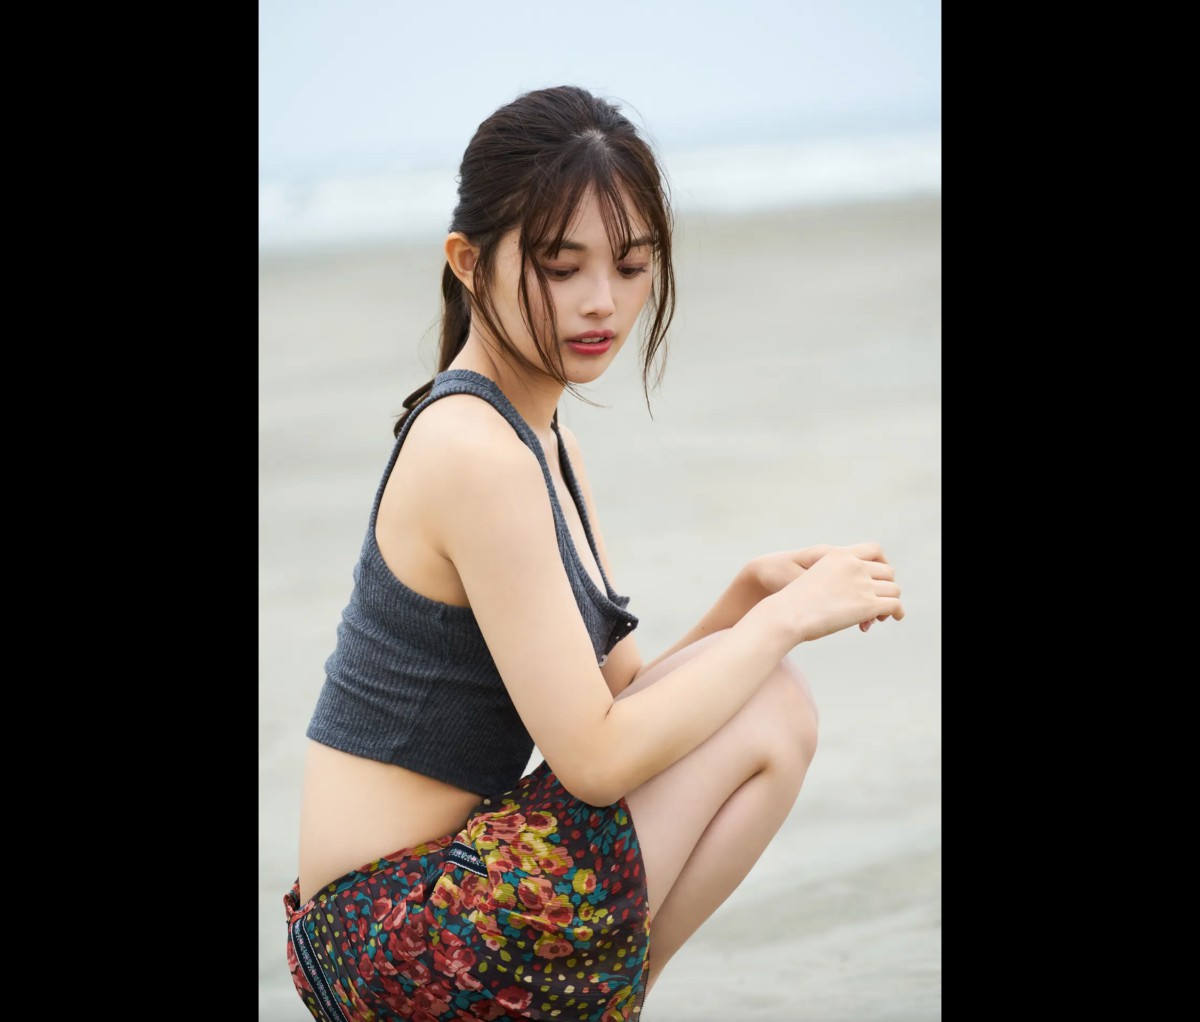 FRIDAYデジタル写真集 Hinami Mori 森日菜美 Seaside Girl Full Version 0023 3424393690.jpg